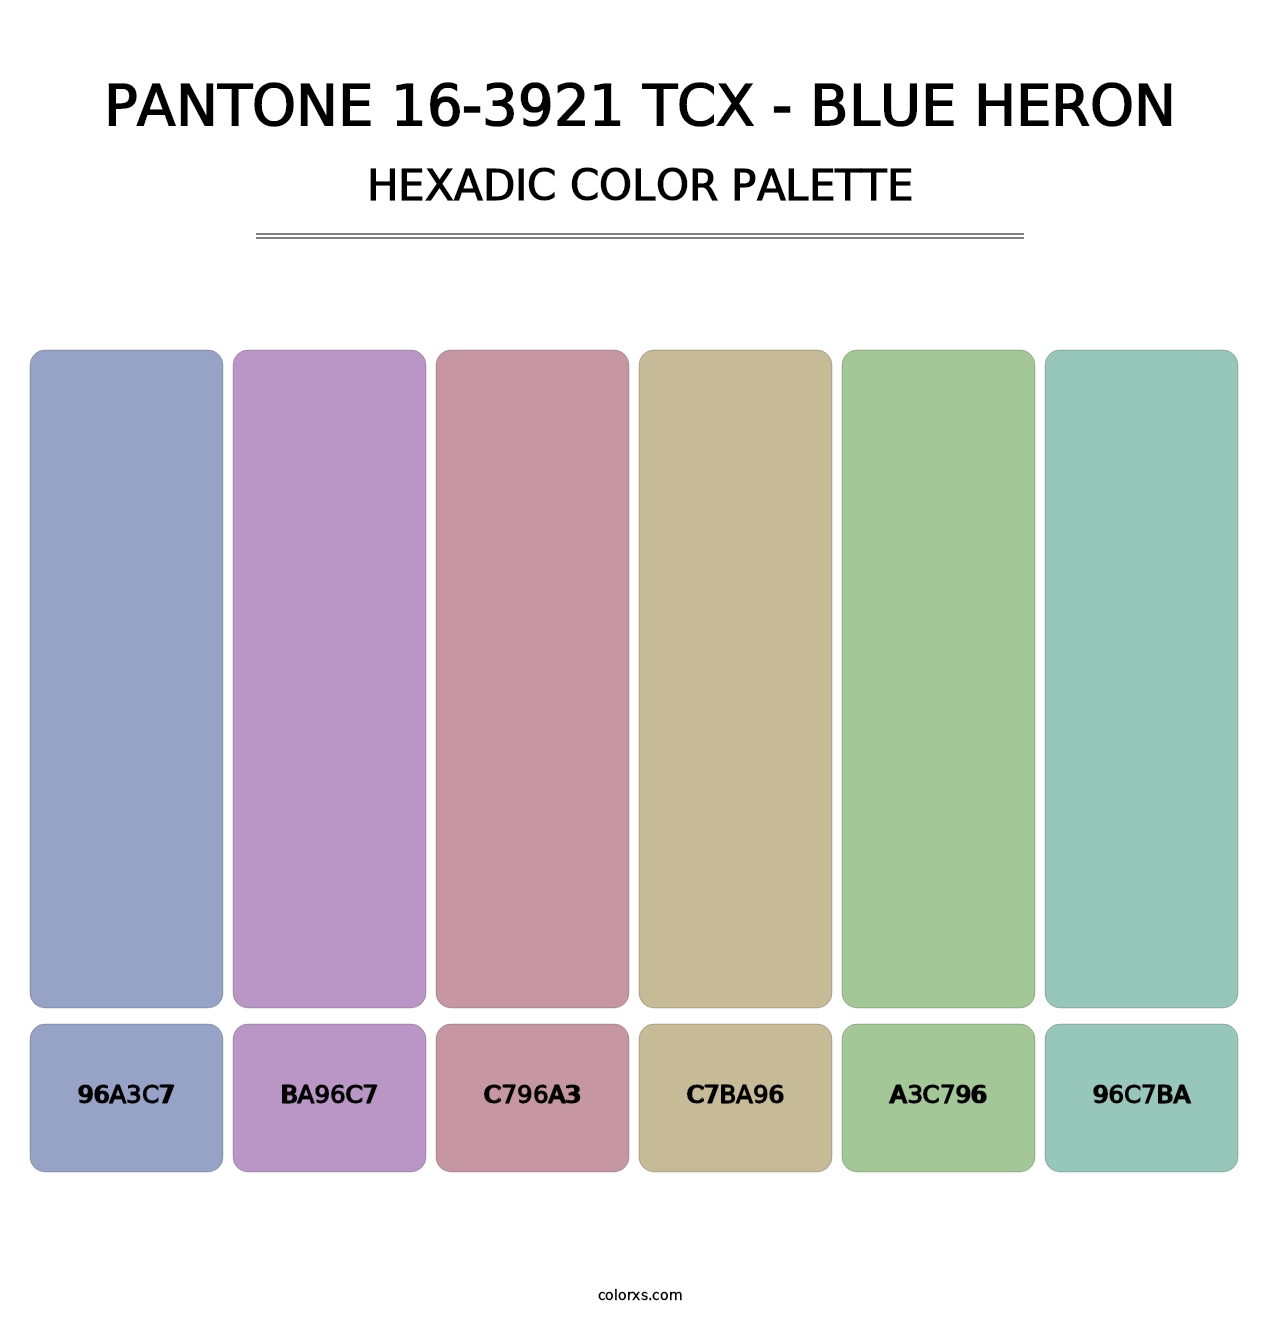 PANTONE 16-3921 TCX - Blue Heron - Hexadic Color Palette